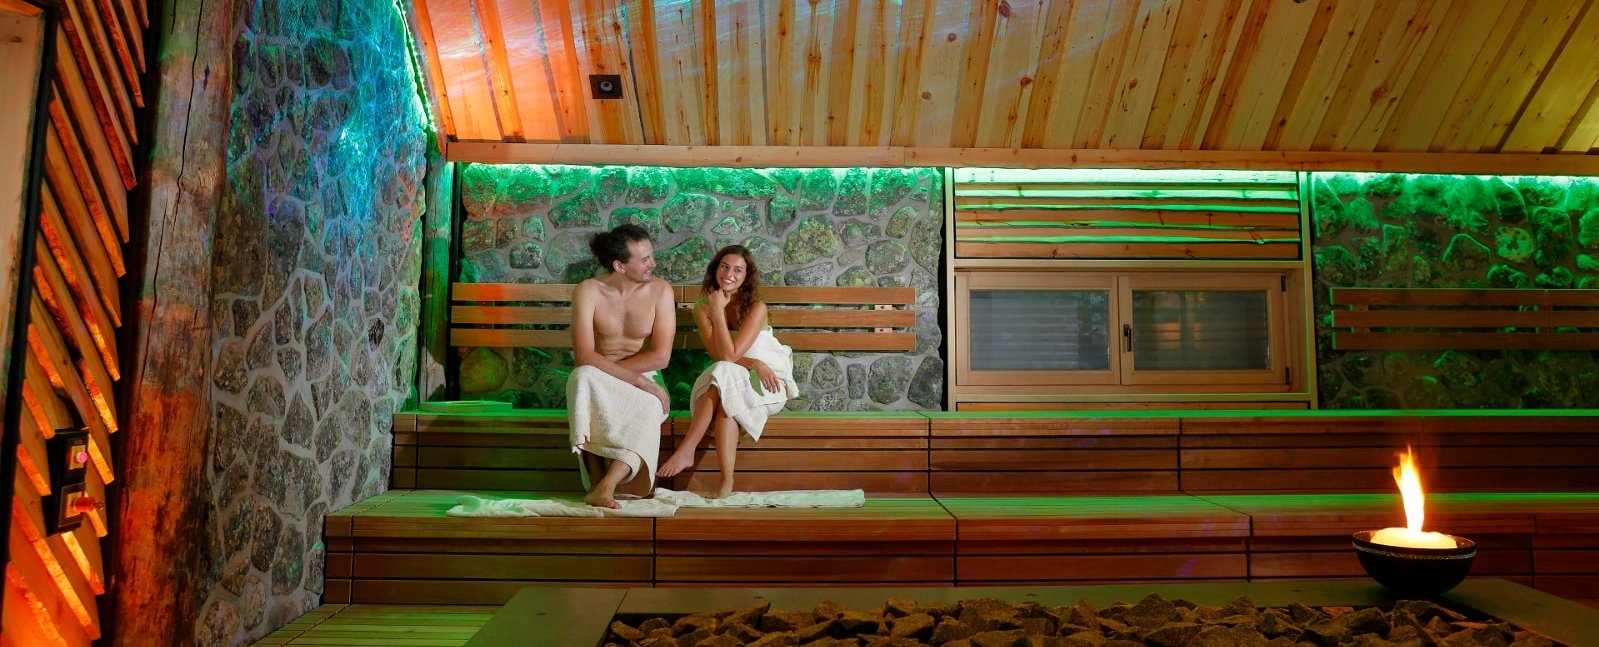 Vaikutus Sauna mit Besuchern